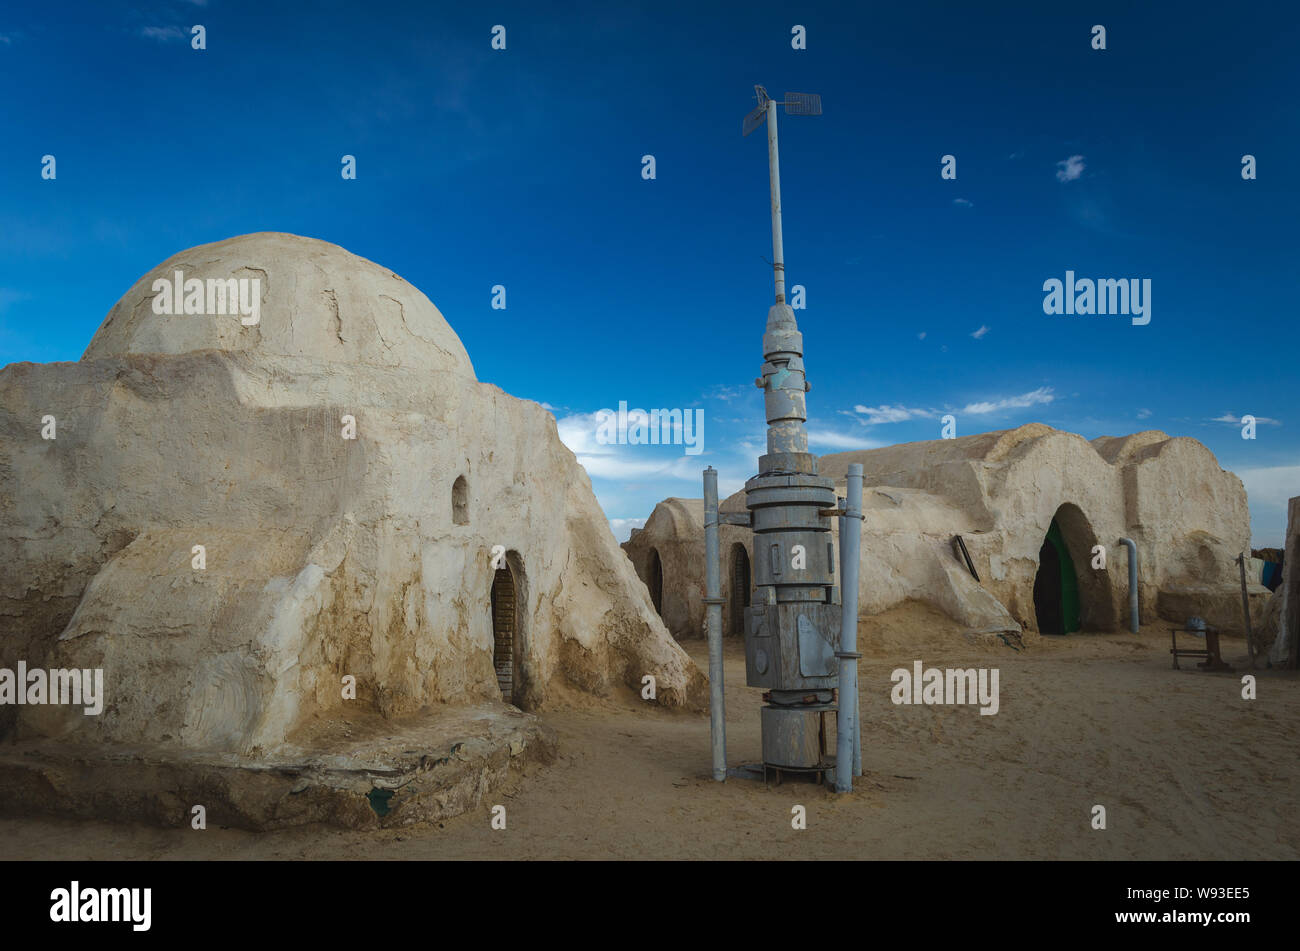 Star Wars decoración configurada para la película. El desierto del Sahara, Túnez. Foto de stock